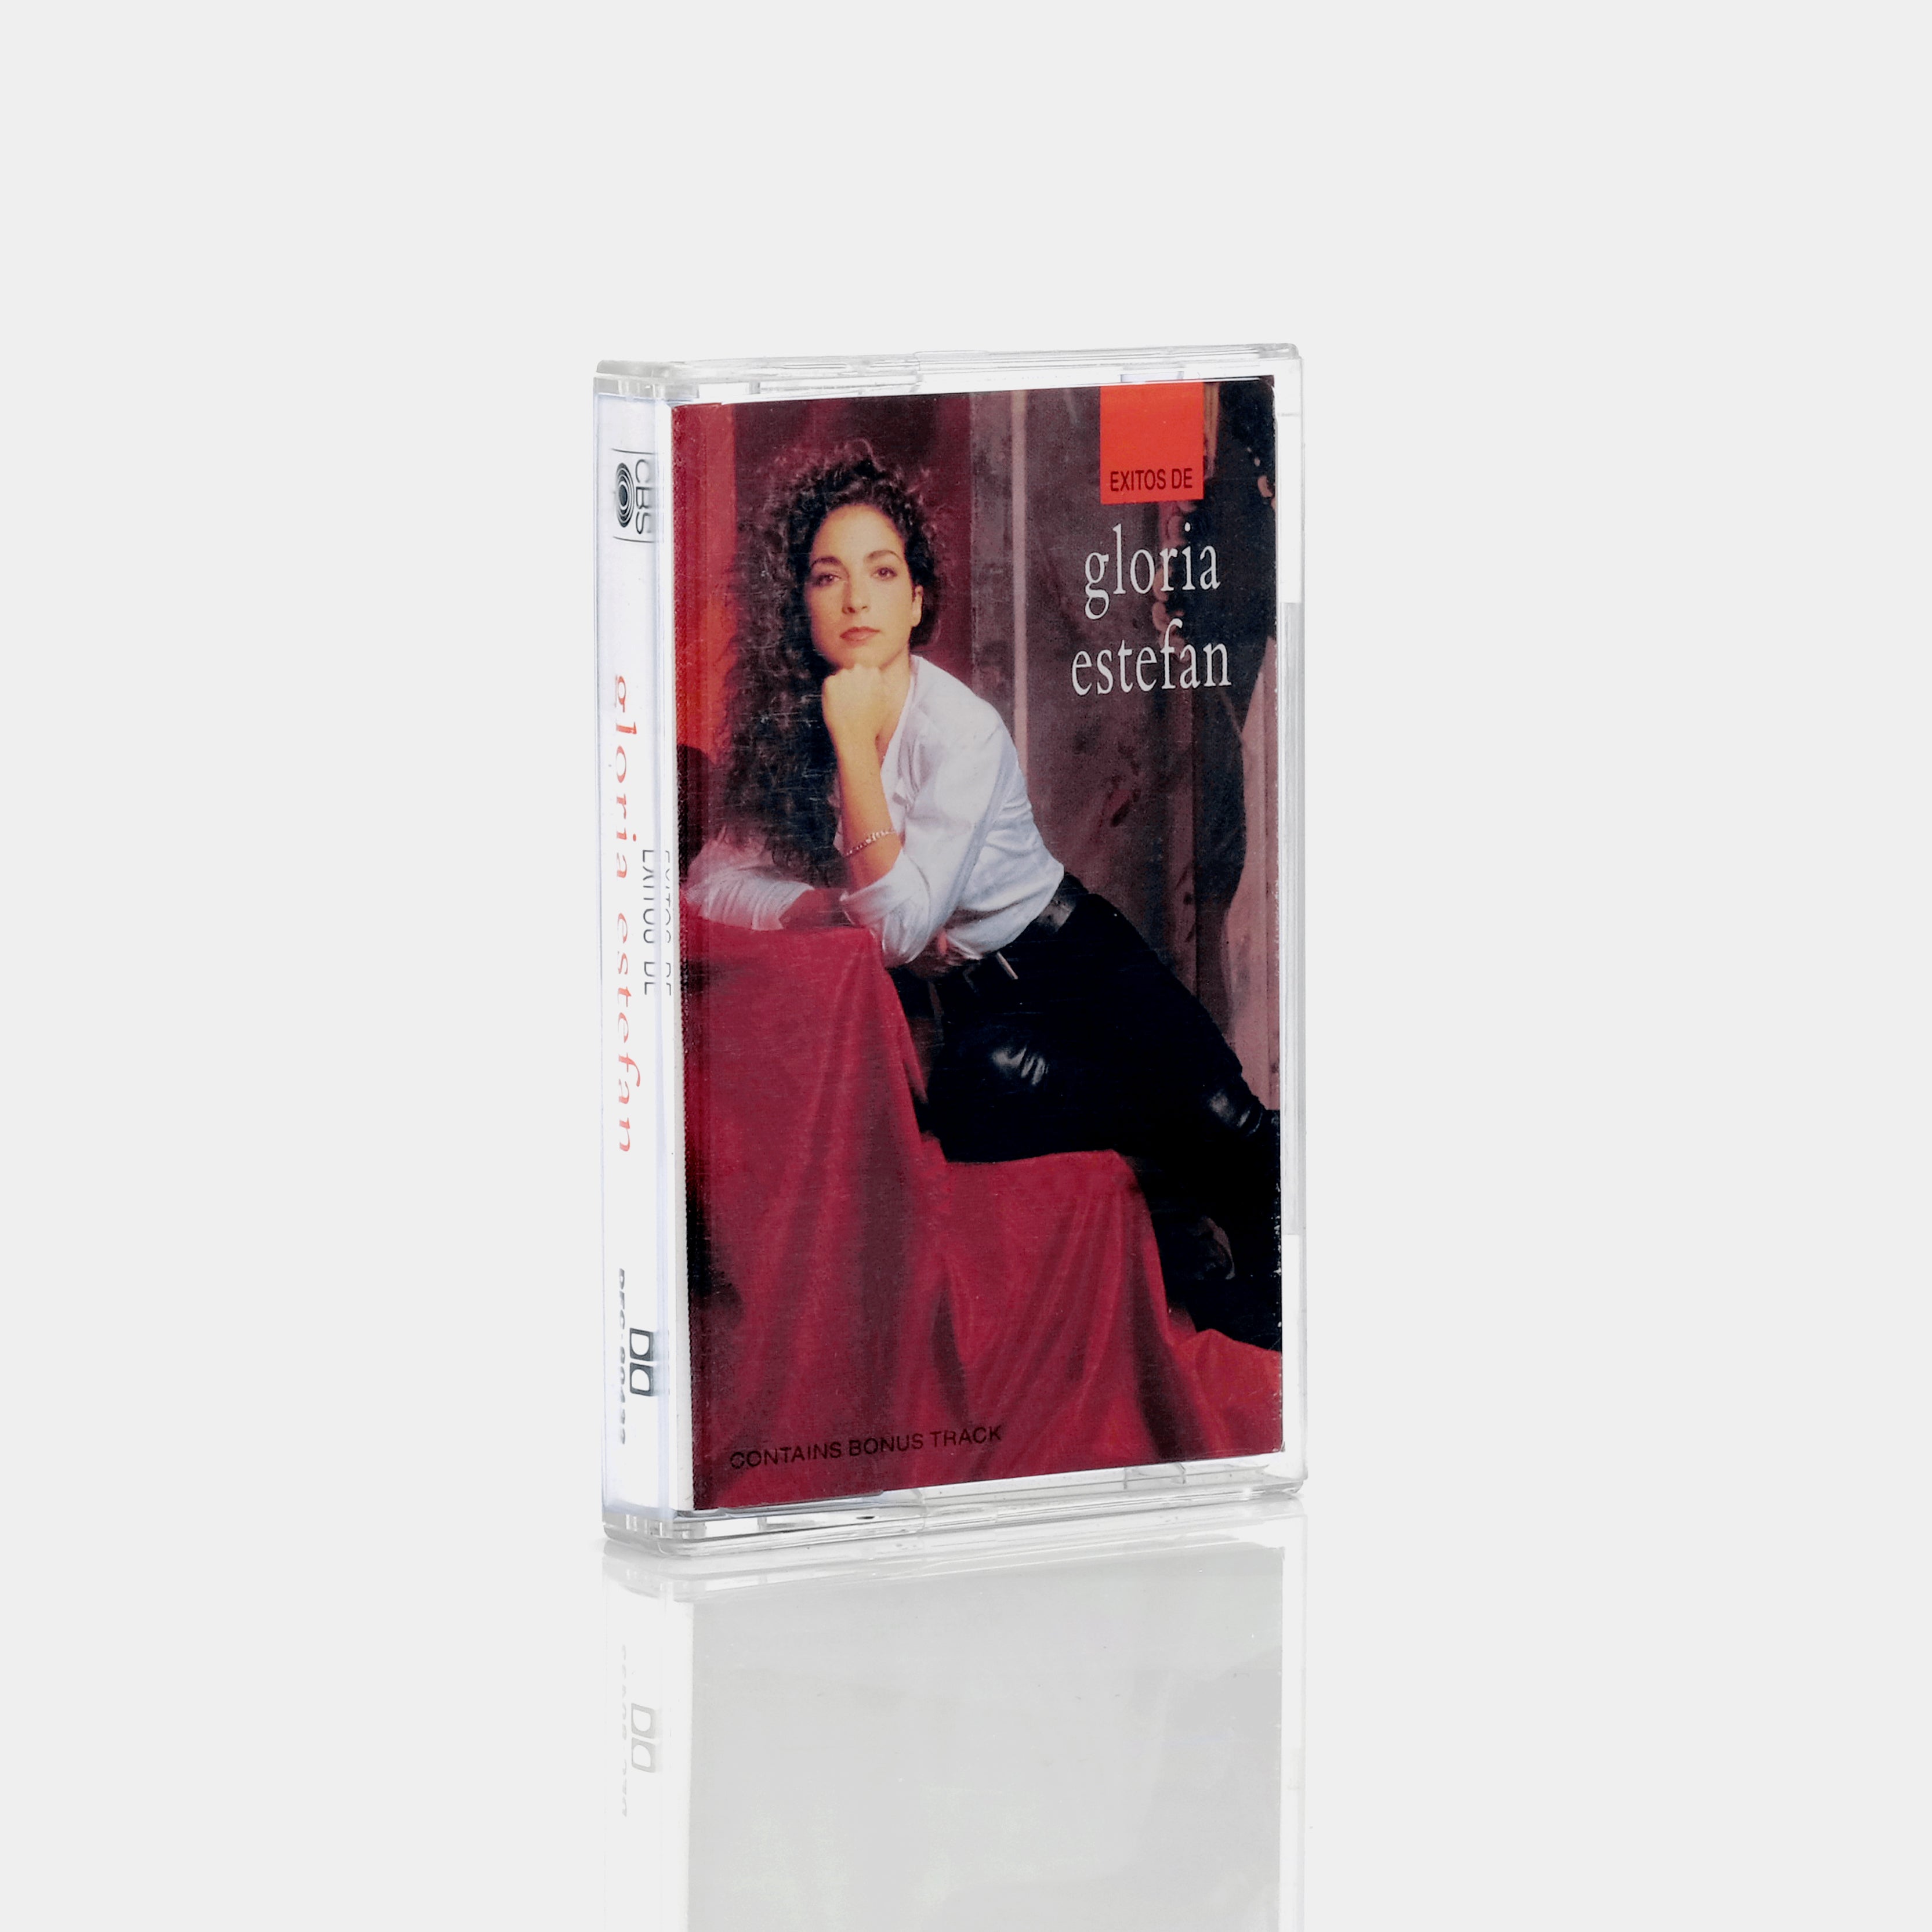 Gloria Estefan - Exitos de gloria estefan Cassette Tape